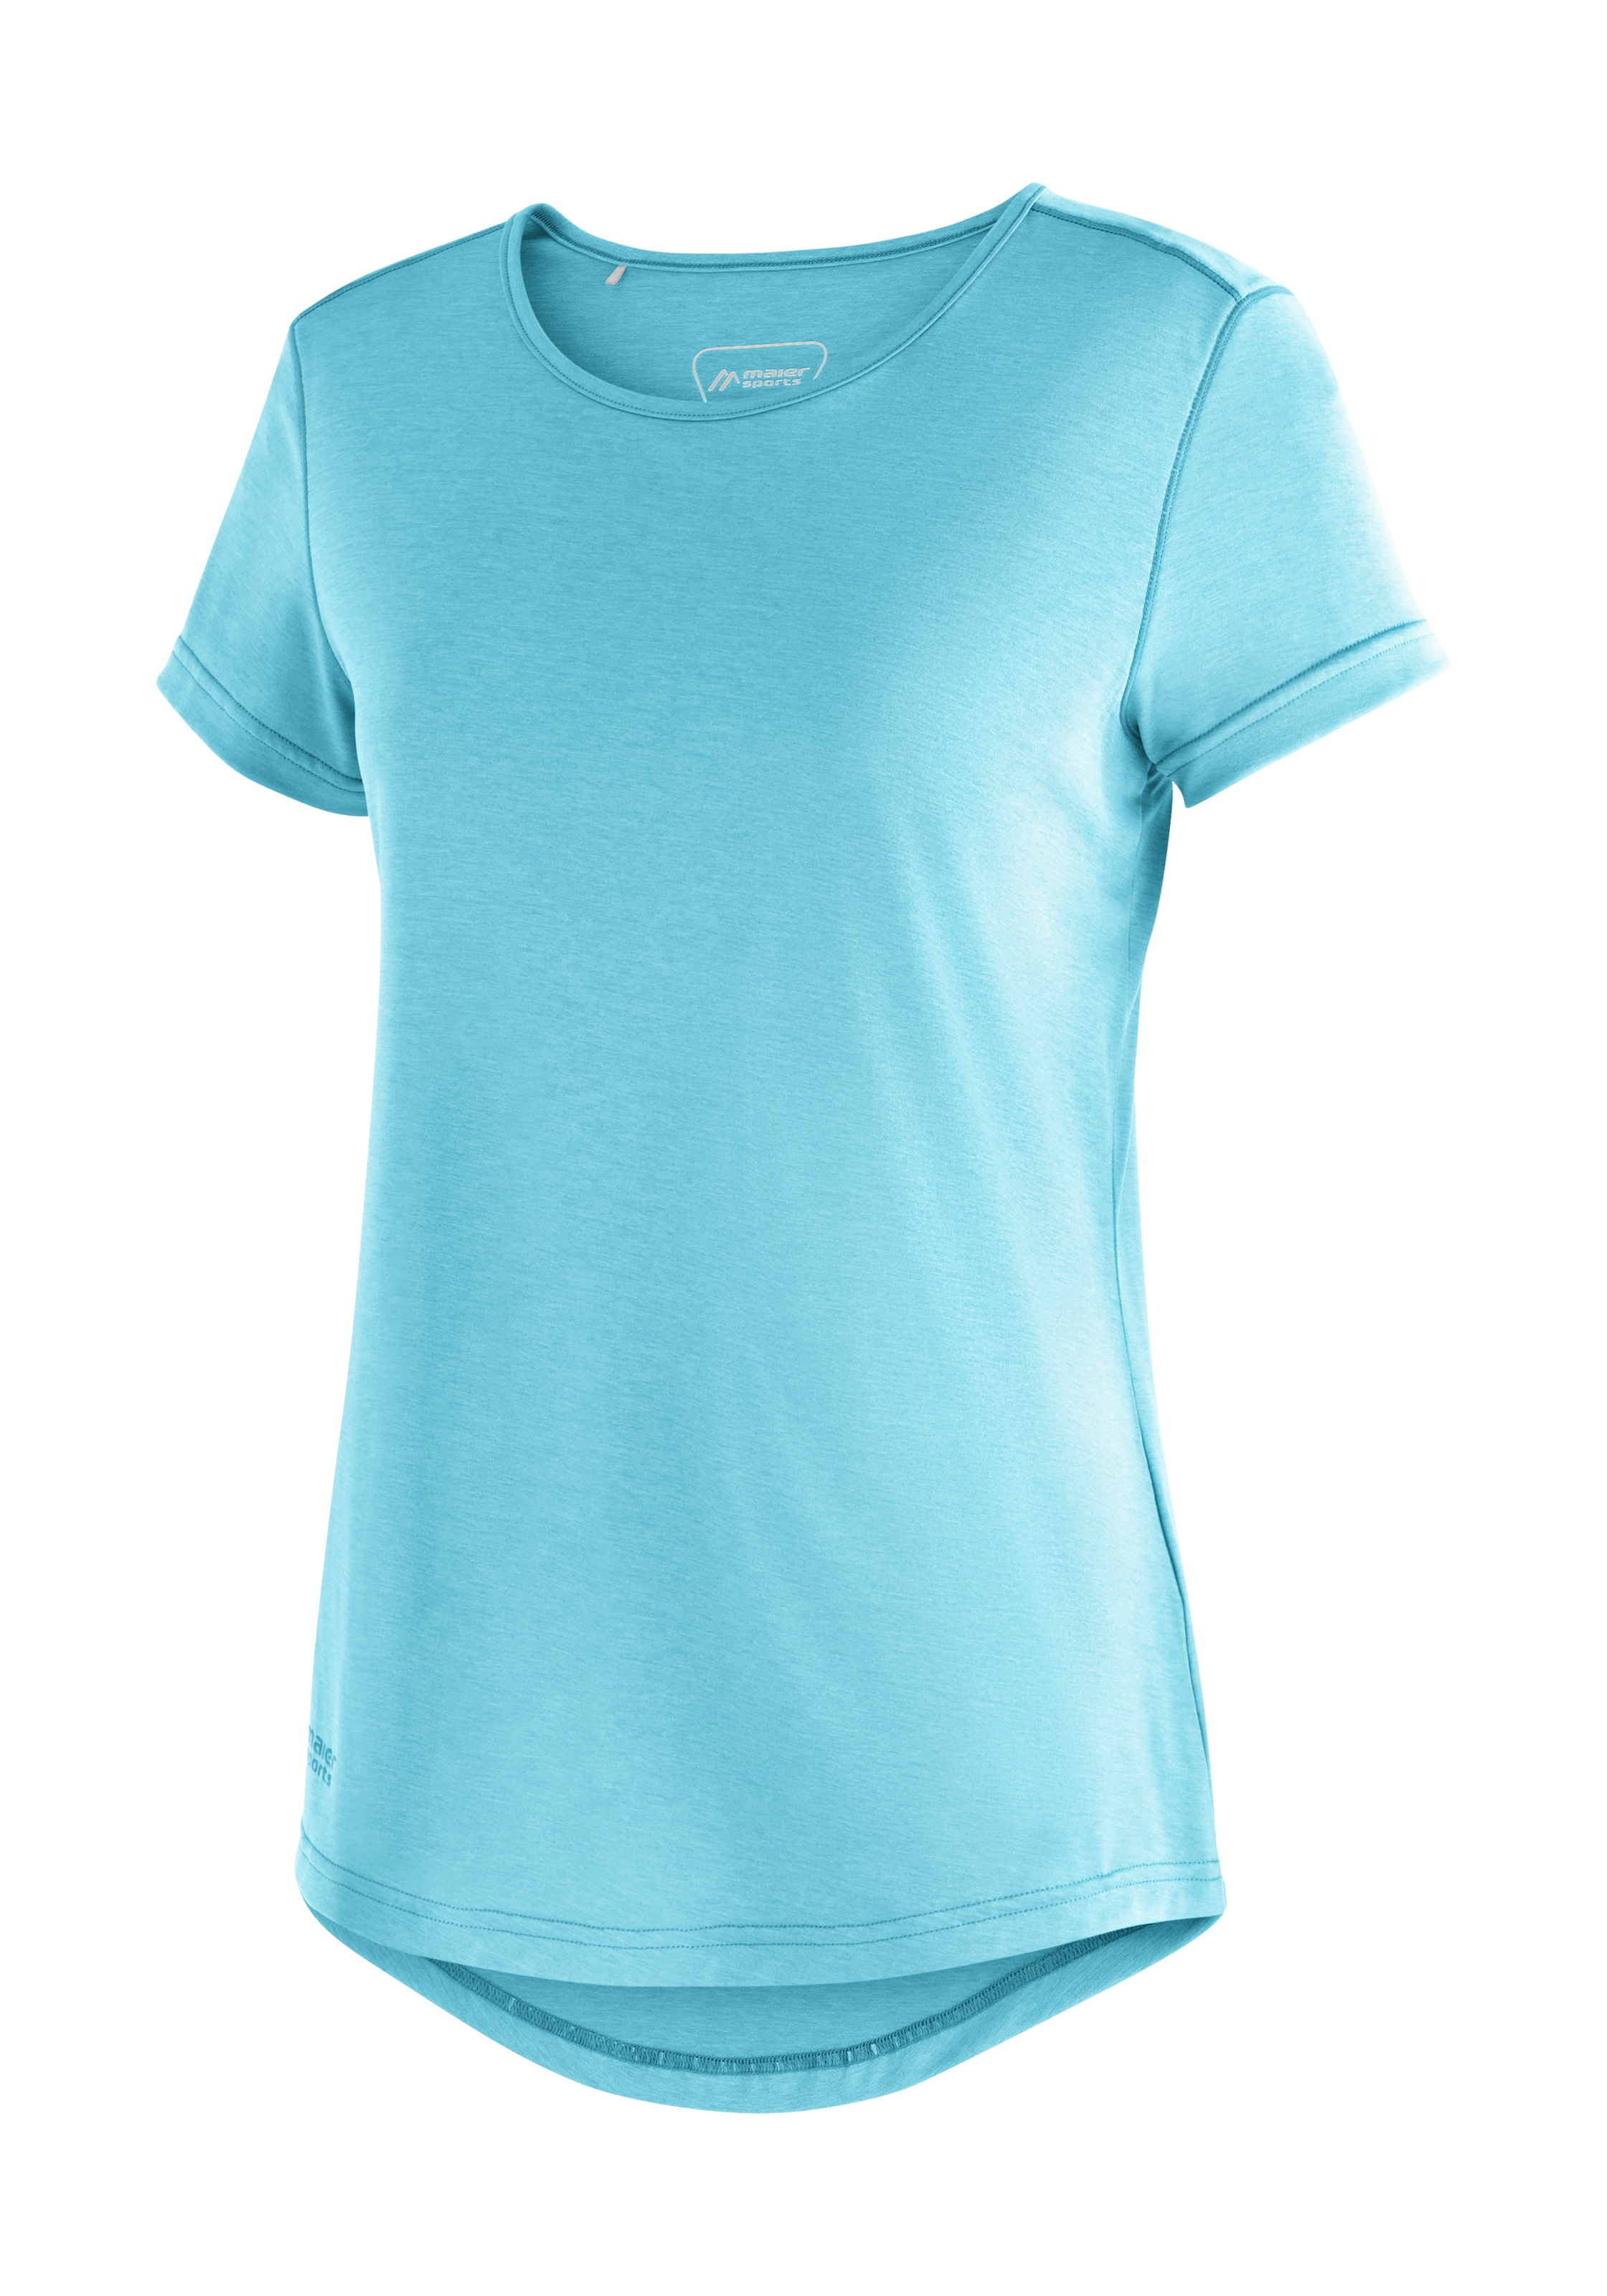 bei W«, Sports OTTO Maier »Horda kaufen T-Shirt für Freizeit Wandern Kurzarmshirt und Damen S/S